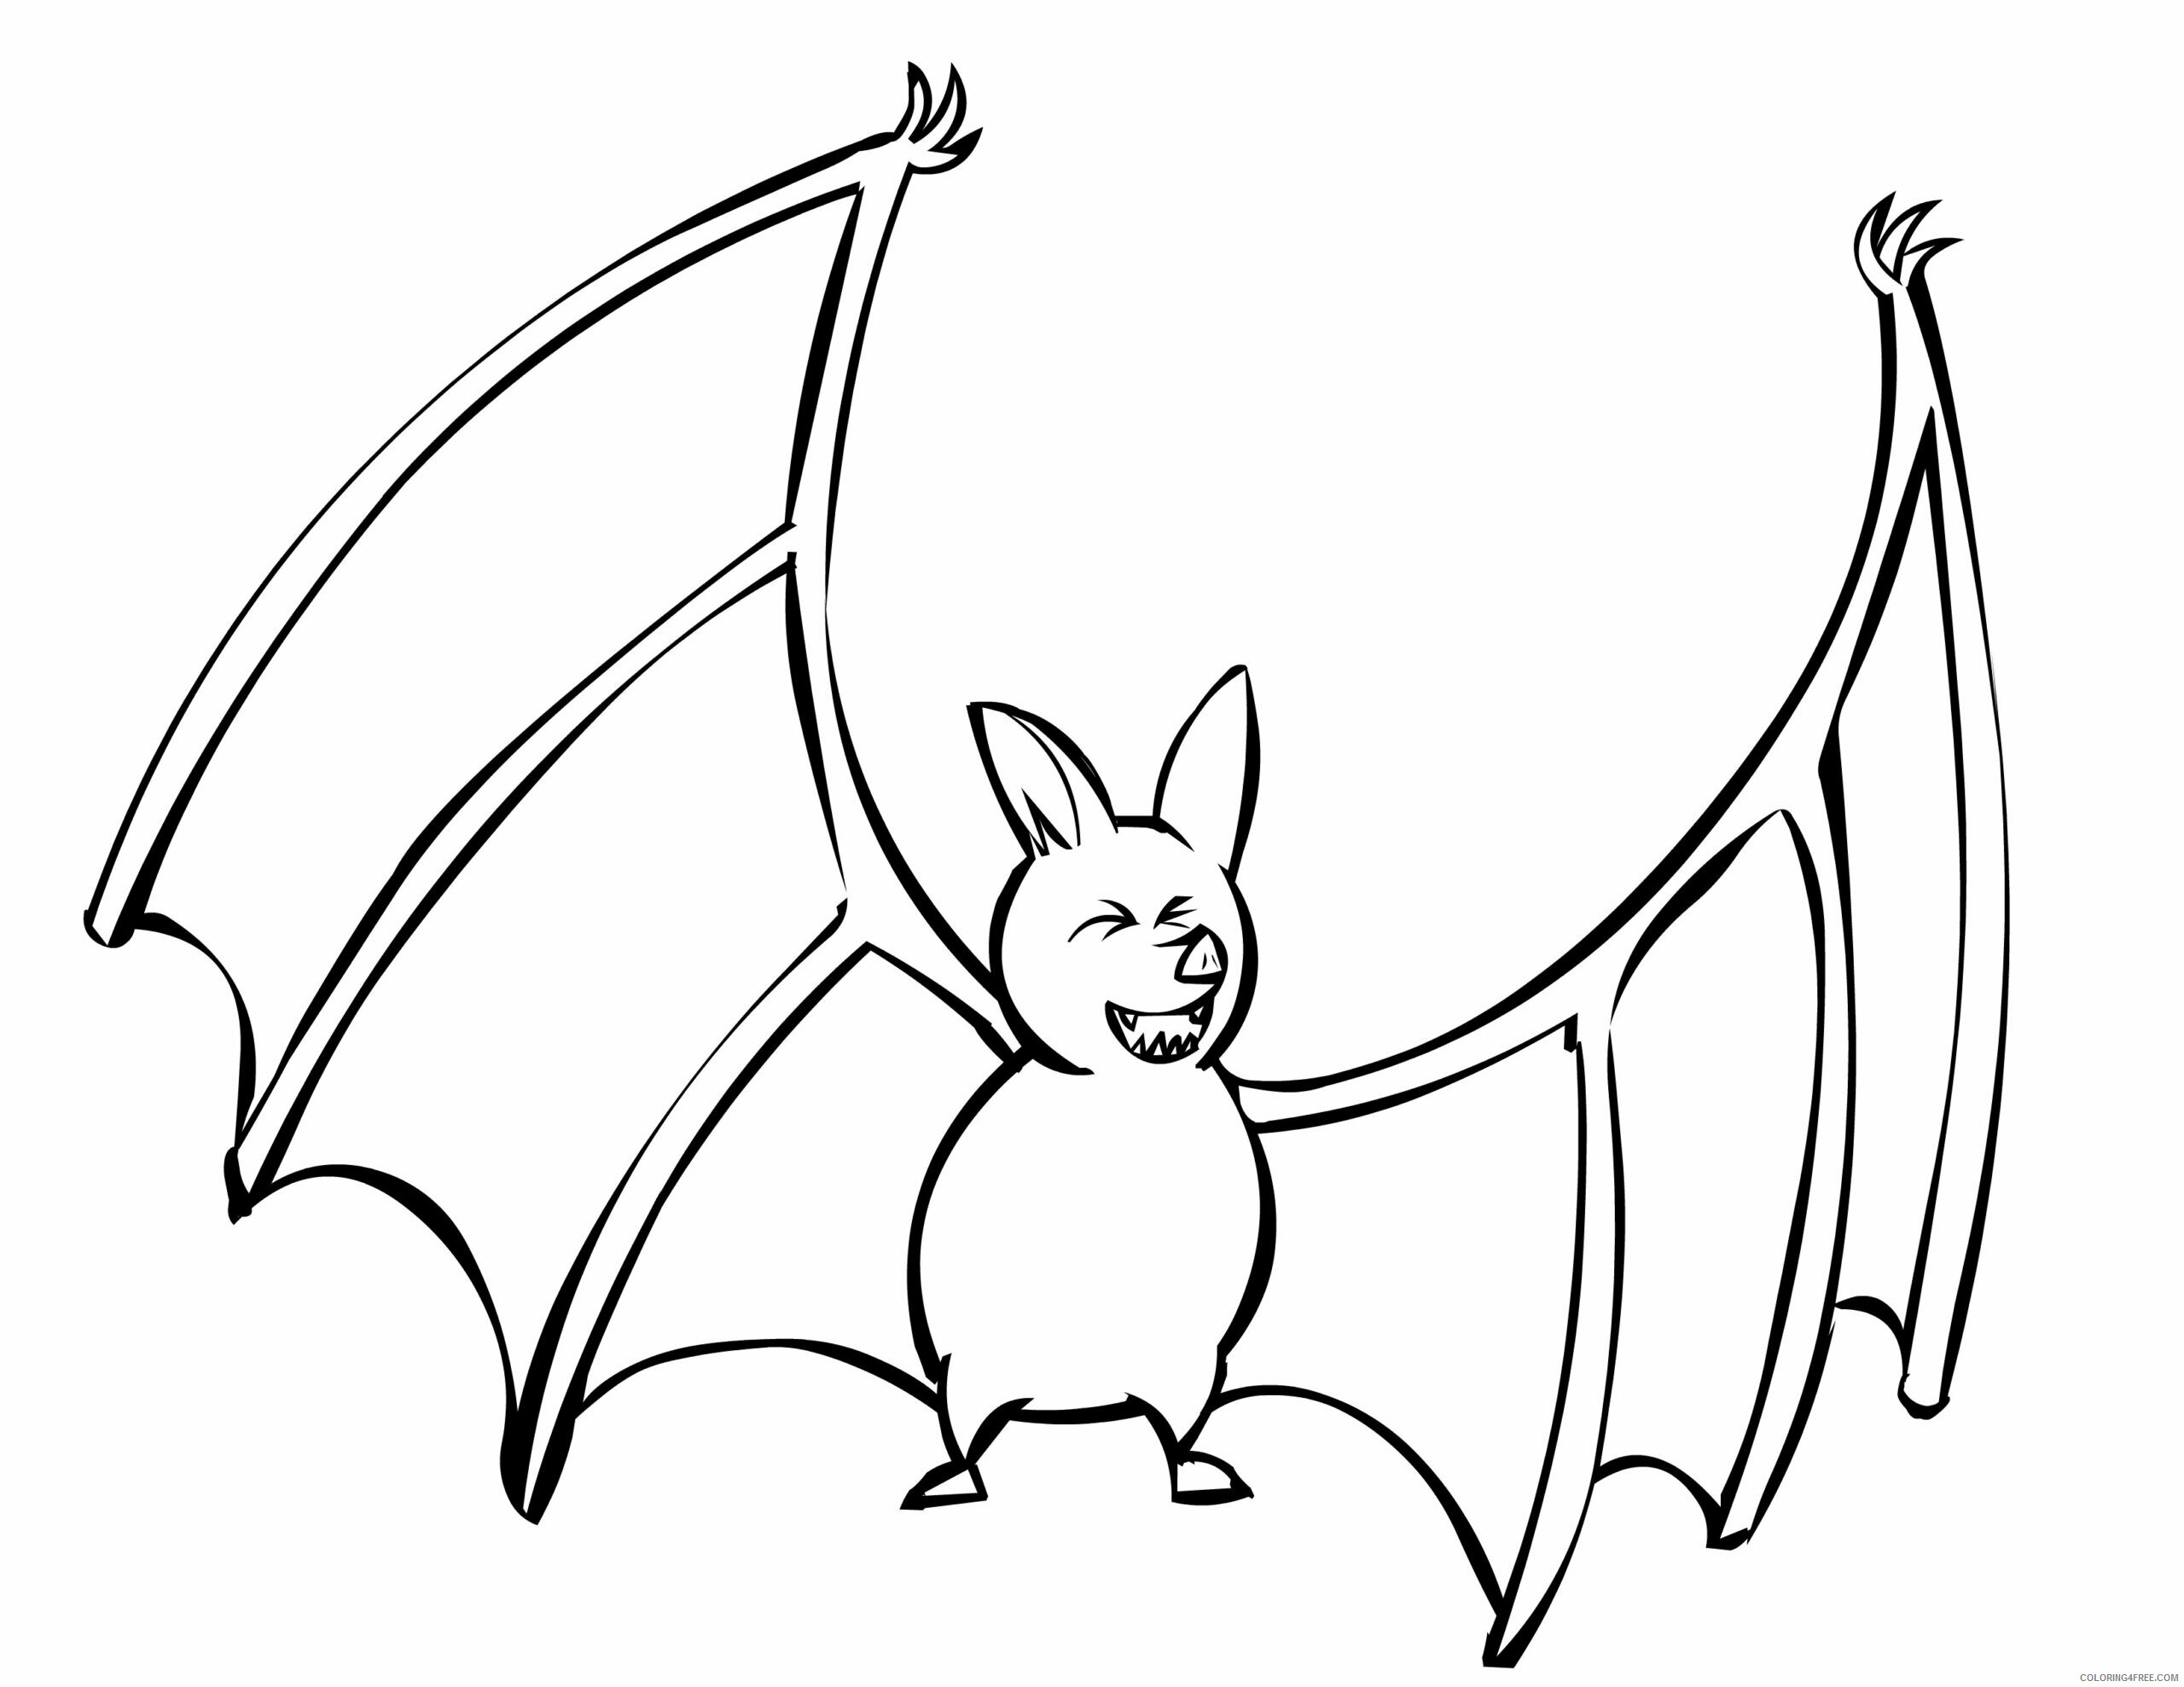 Bat Coloring Pages Animal Printable Sheets Bat 2021 0216 Coloring4free